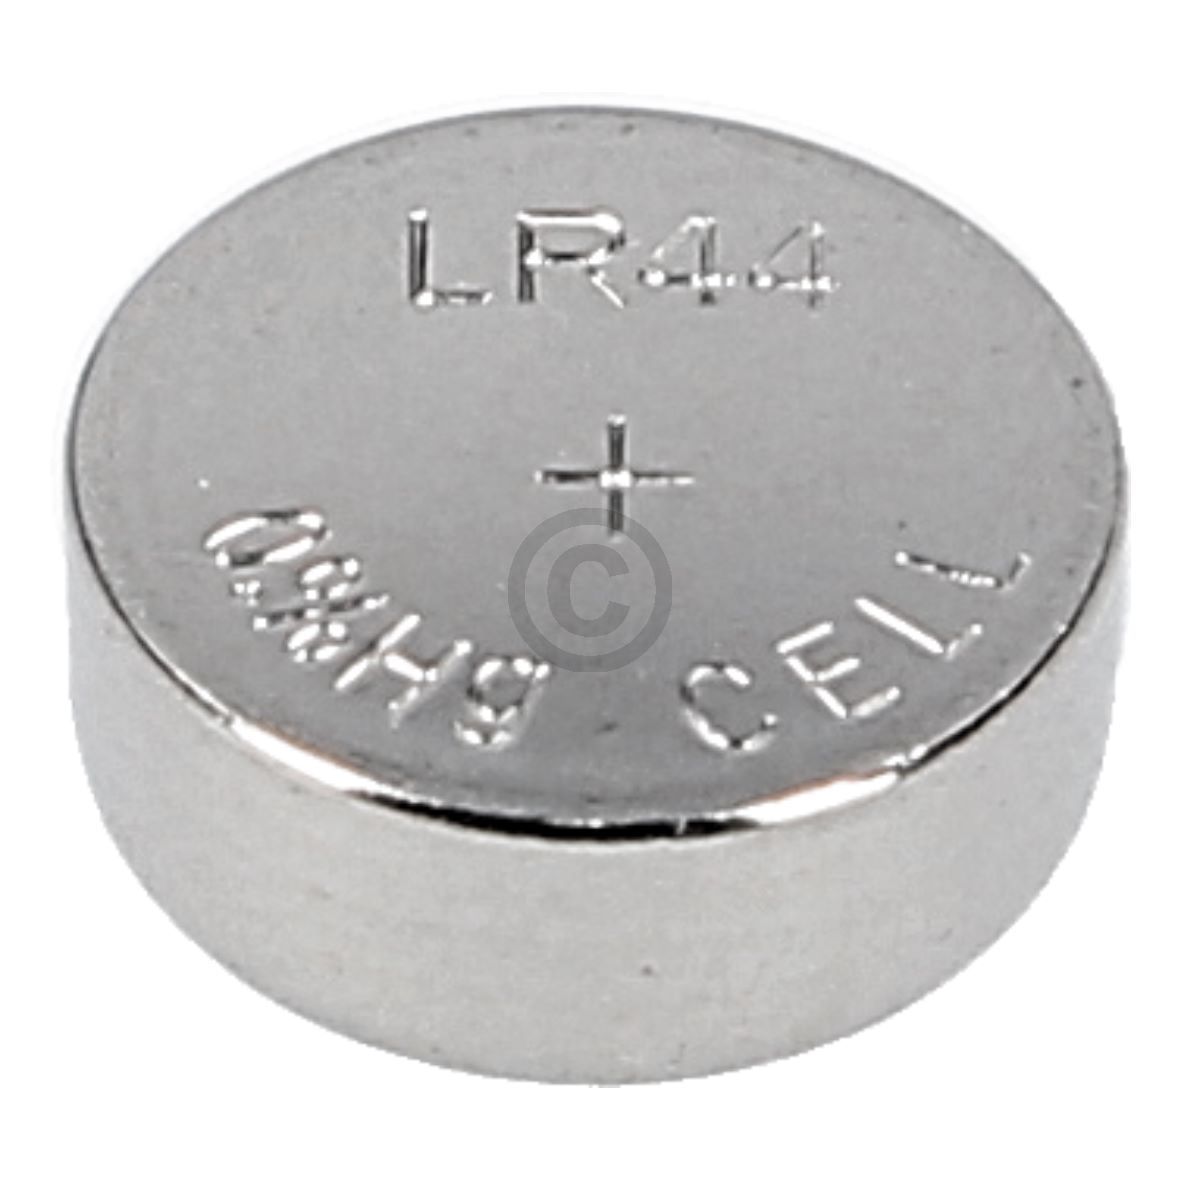 Batterie LR44 LIEBHERR 6342997 für Digitalthermometer Kühlschrank Gefrierschrank